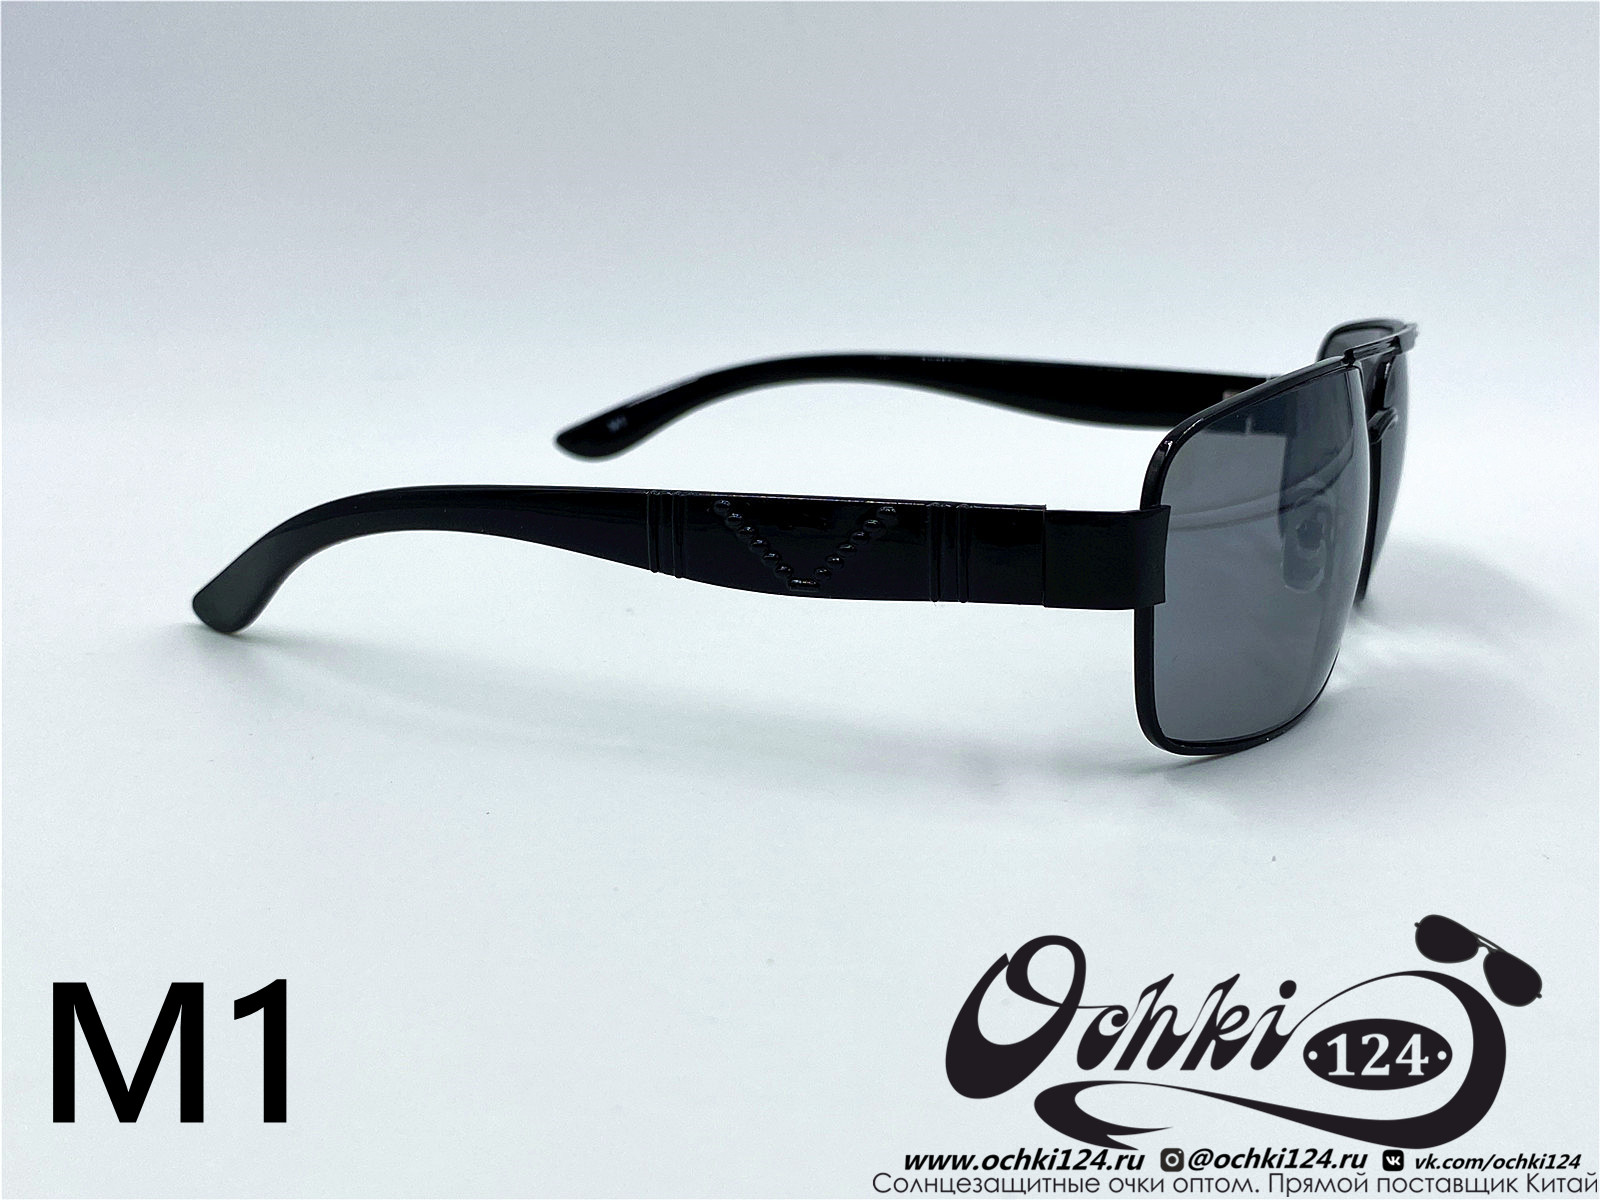  Солнцезащитные очки картинка 2022 Мужские Узкие и длинные KaiFeng M1-1 